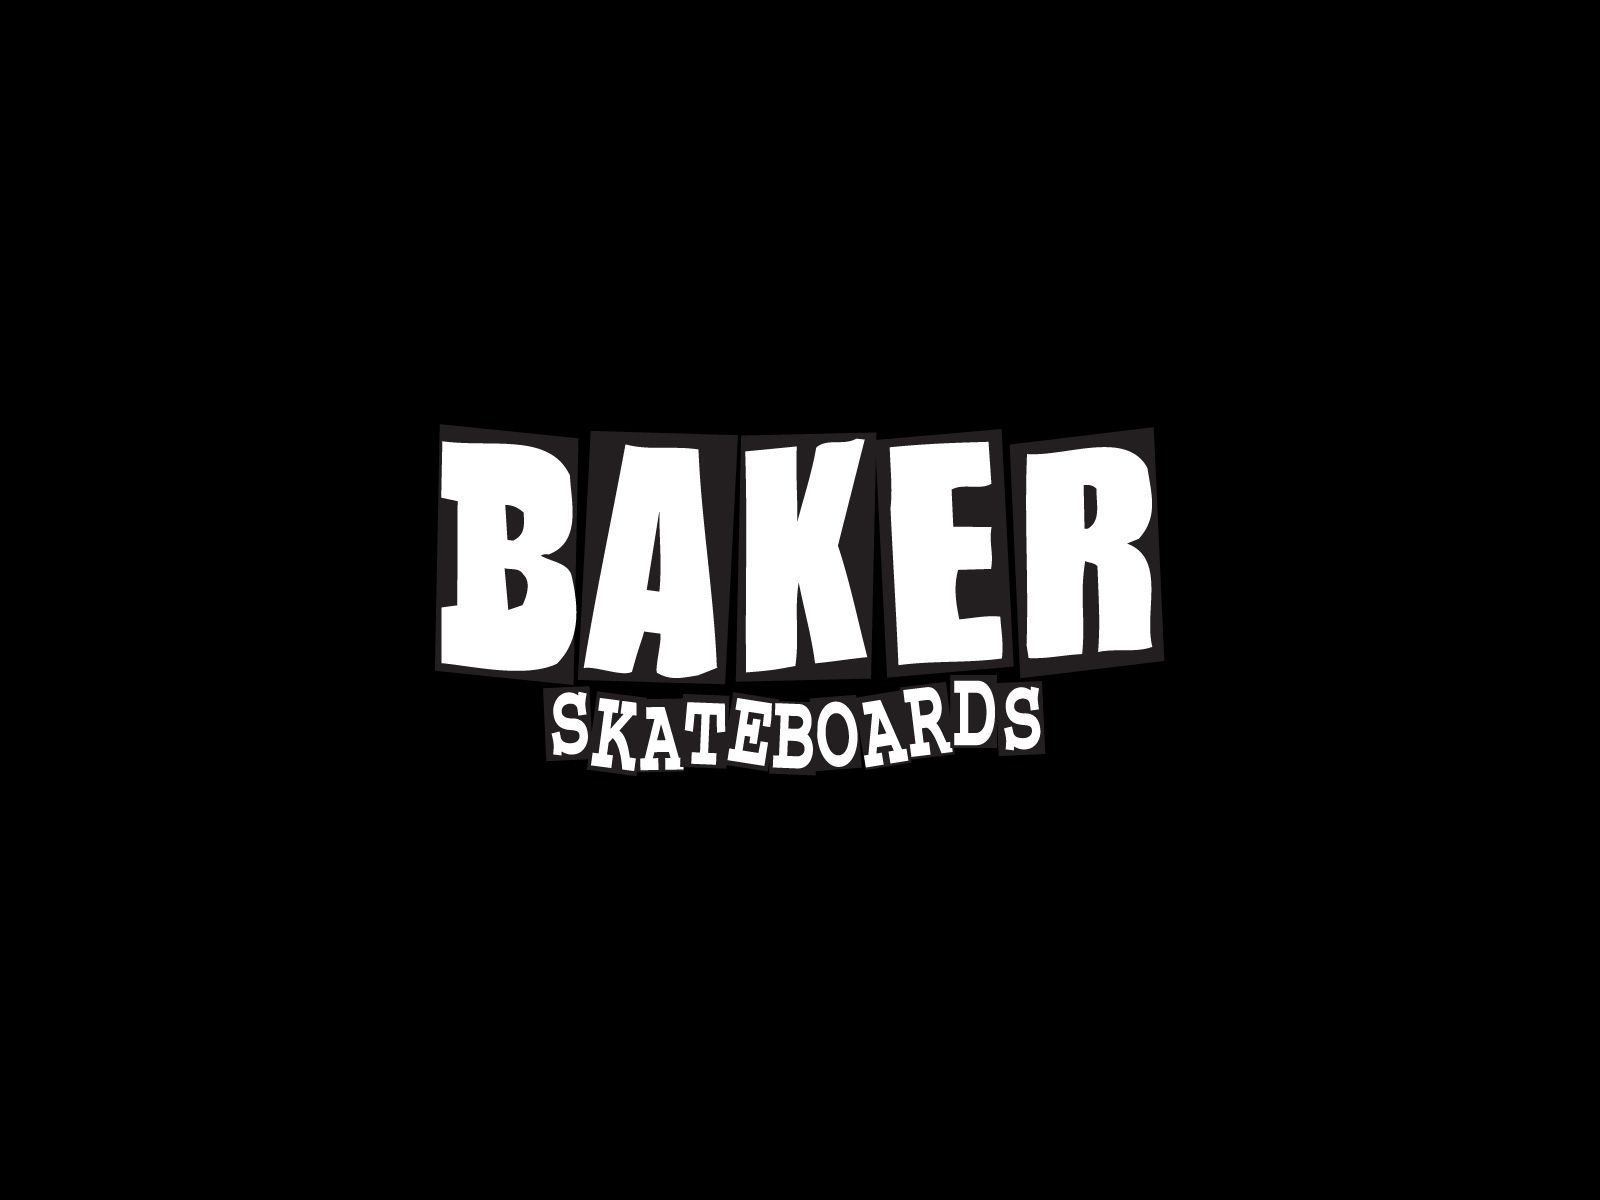 Skateboarding wallpapers, skateboard wallpapers, sk8 walls Find